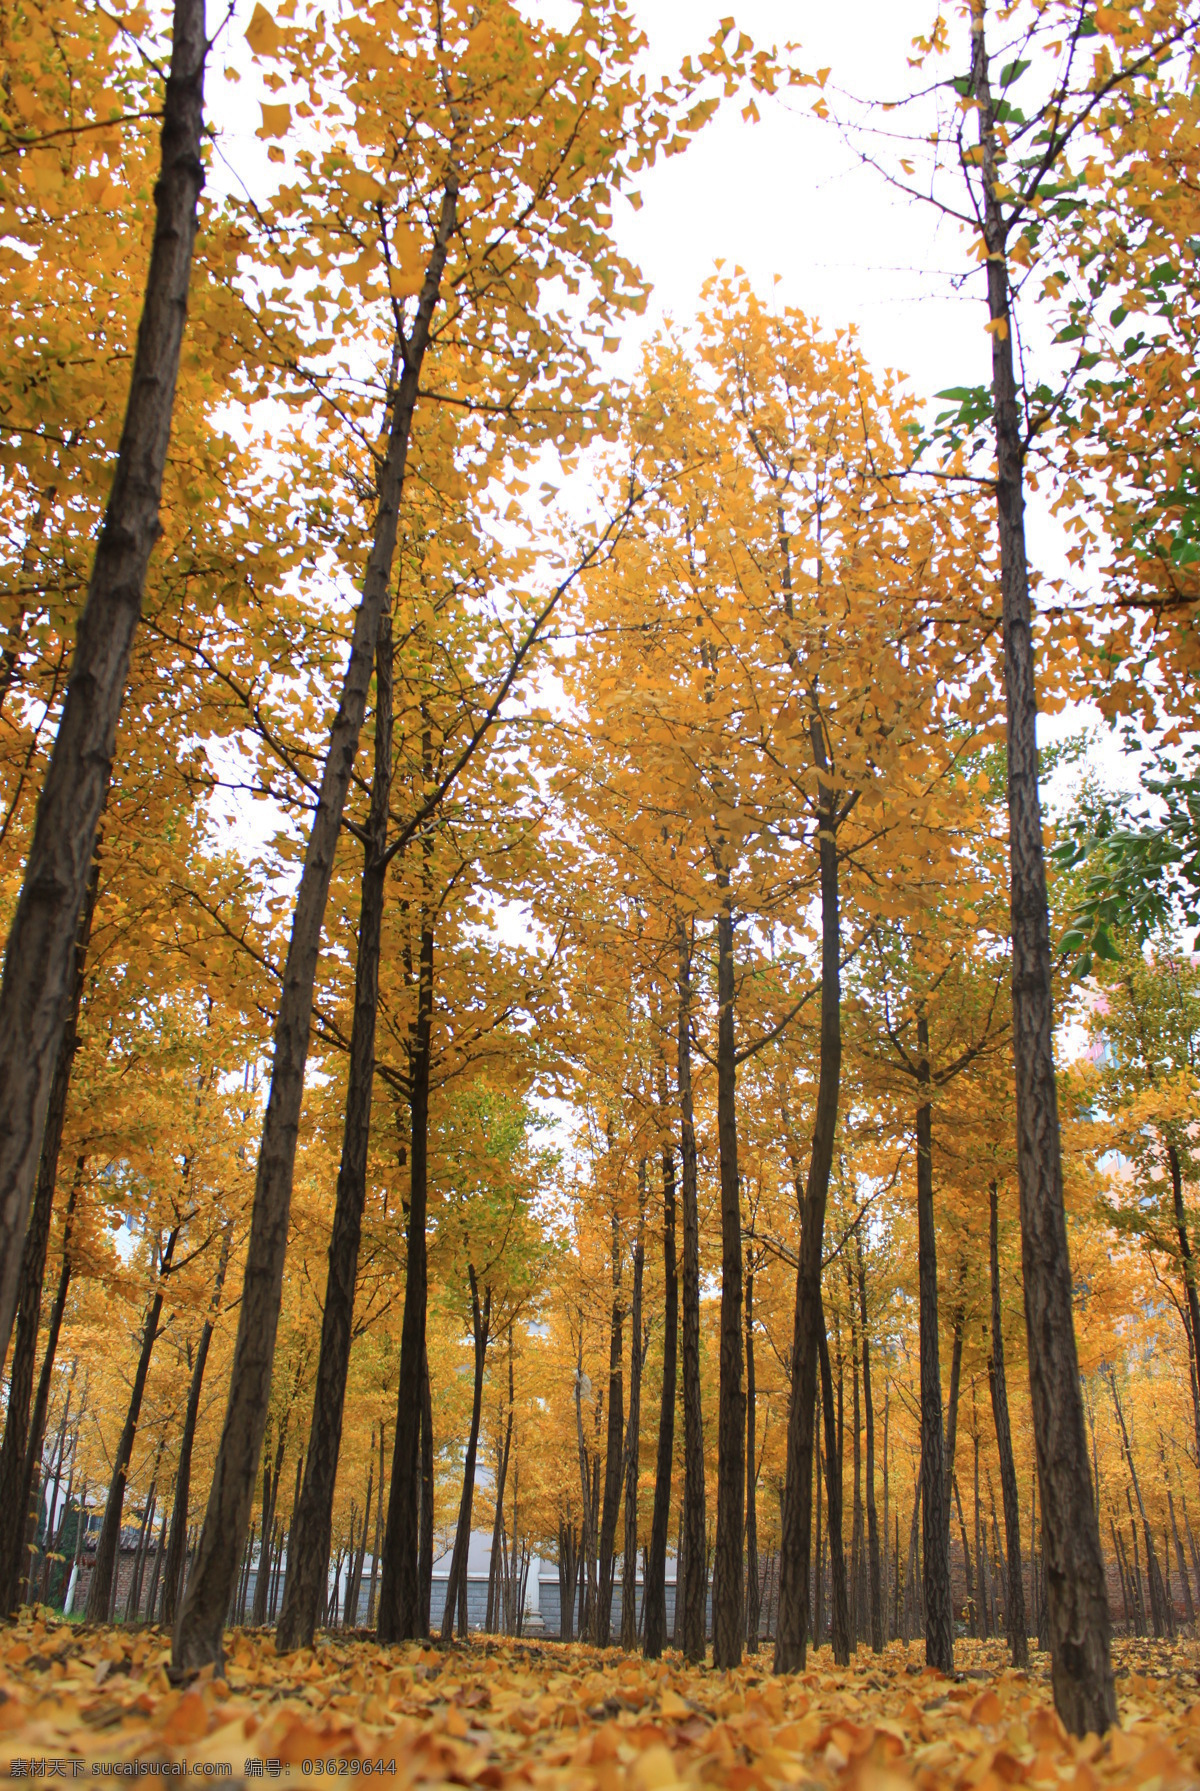 秋天的树叶 黄色 叶子 纵向 银杏树 落叶 银杏叶 树林 自然风景 自然景观